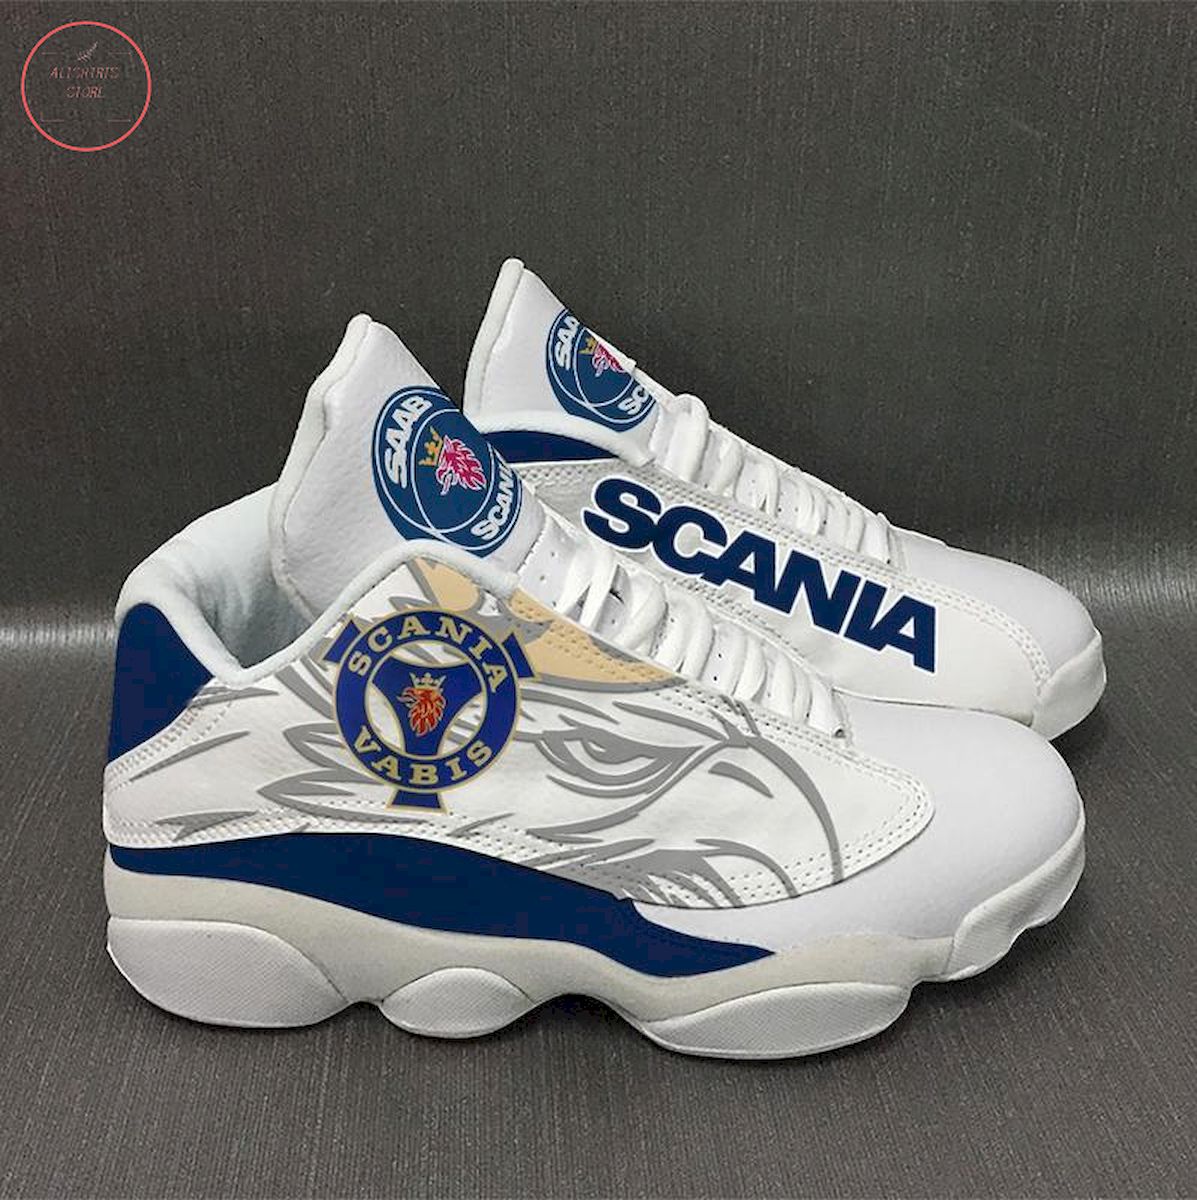 Scania Vabis Air Jordan 13 Sneaker Shoes